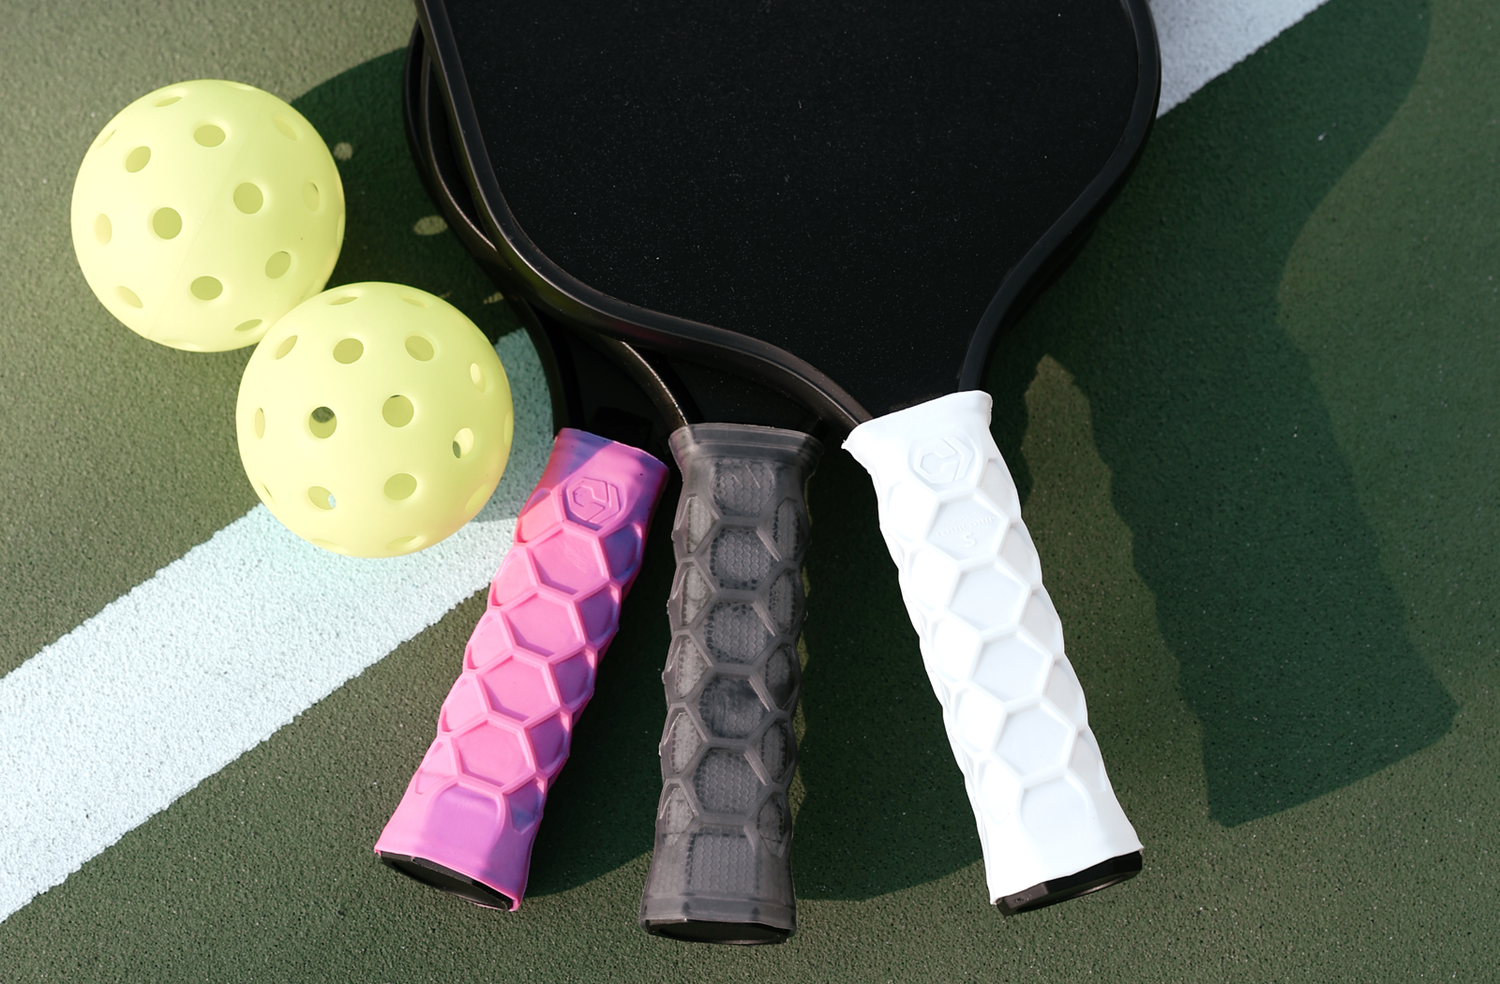  Hesacore Padel Tour Grip - Agarre cómodo para codo de tenis,  mayor fuerza de agarre, menos vibraciones, soporte para los dedos, ayuda a  las manos sudorosas, perfecto para jugadores de club